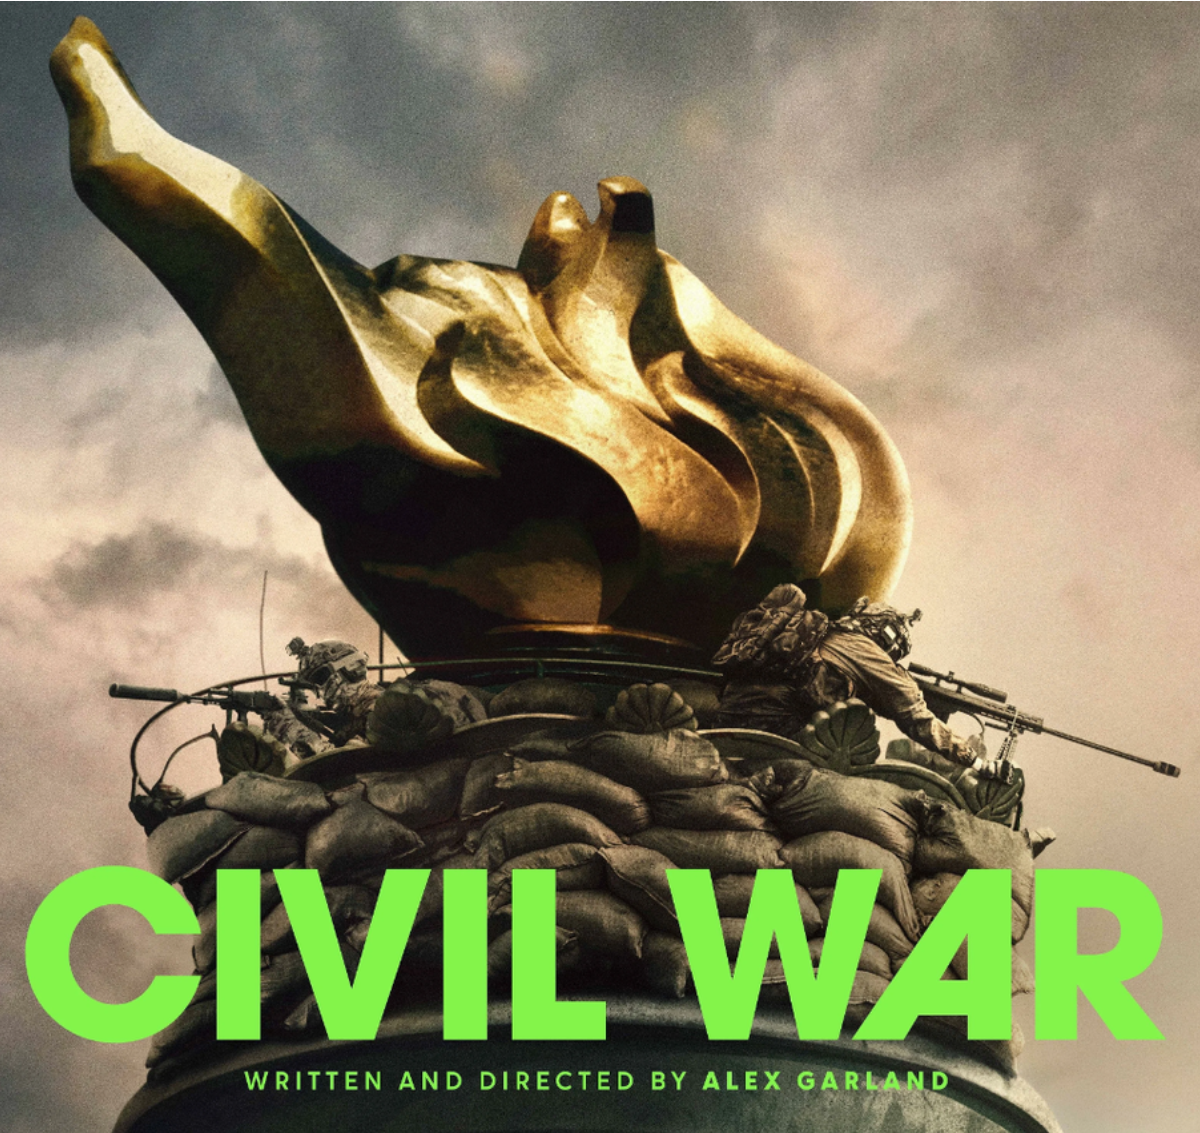 «Civil WAR», что на нашем означает «Гражданская война», а не «Падение империи» как перевели наши прокатчики. Так что за война?